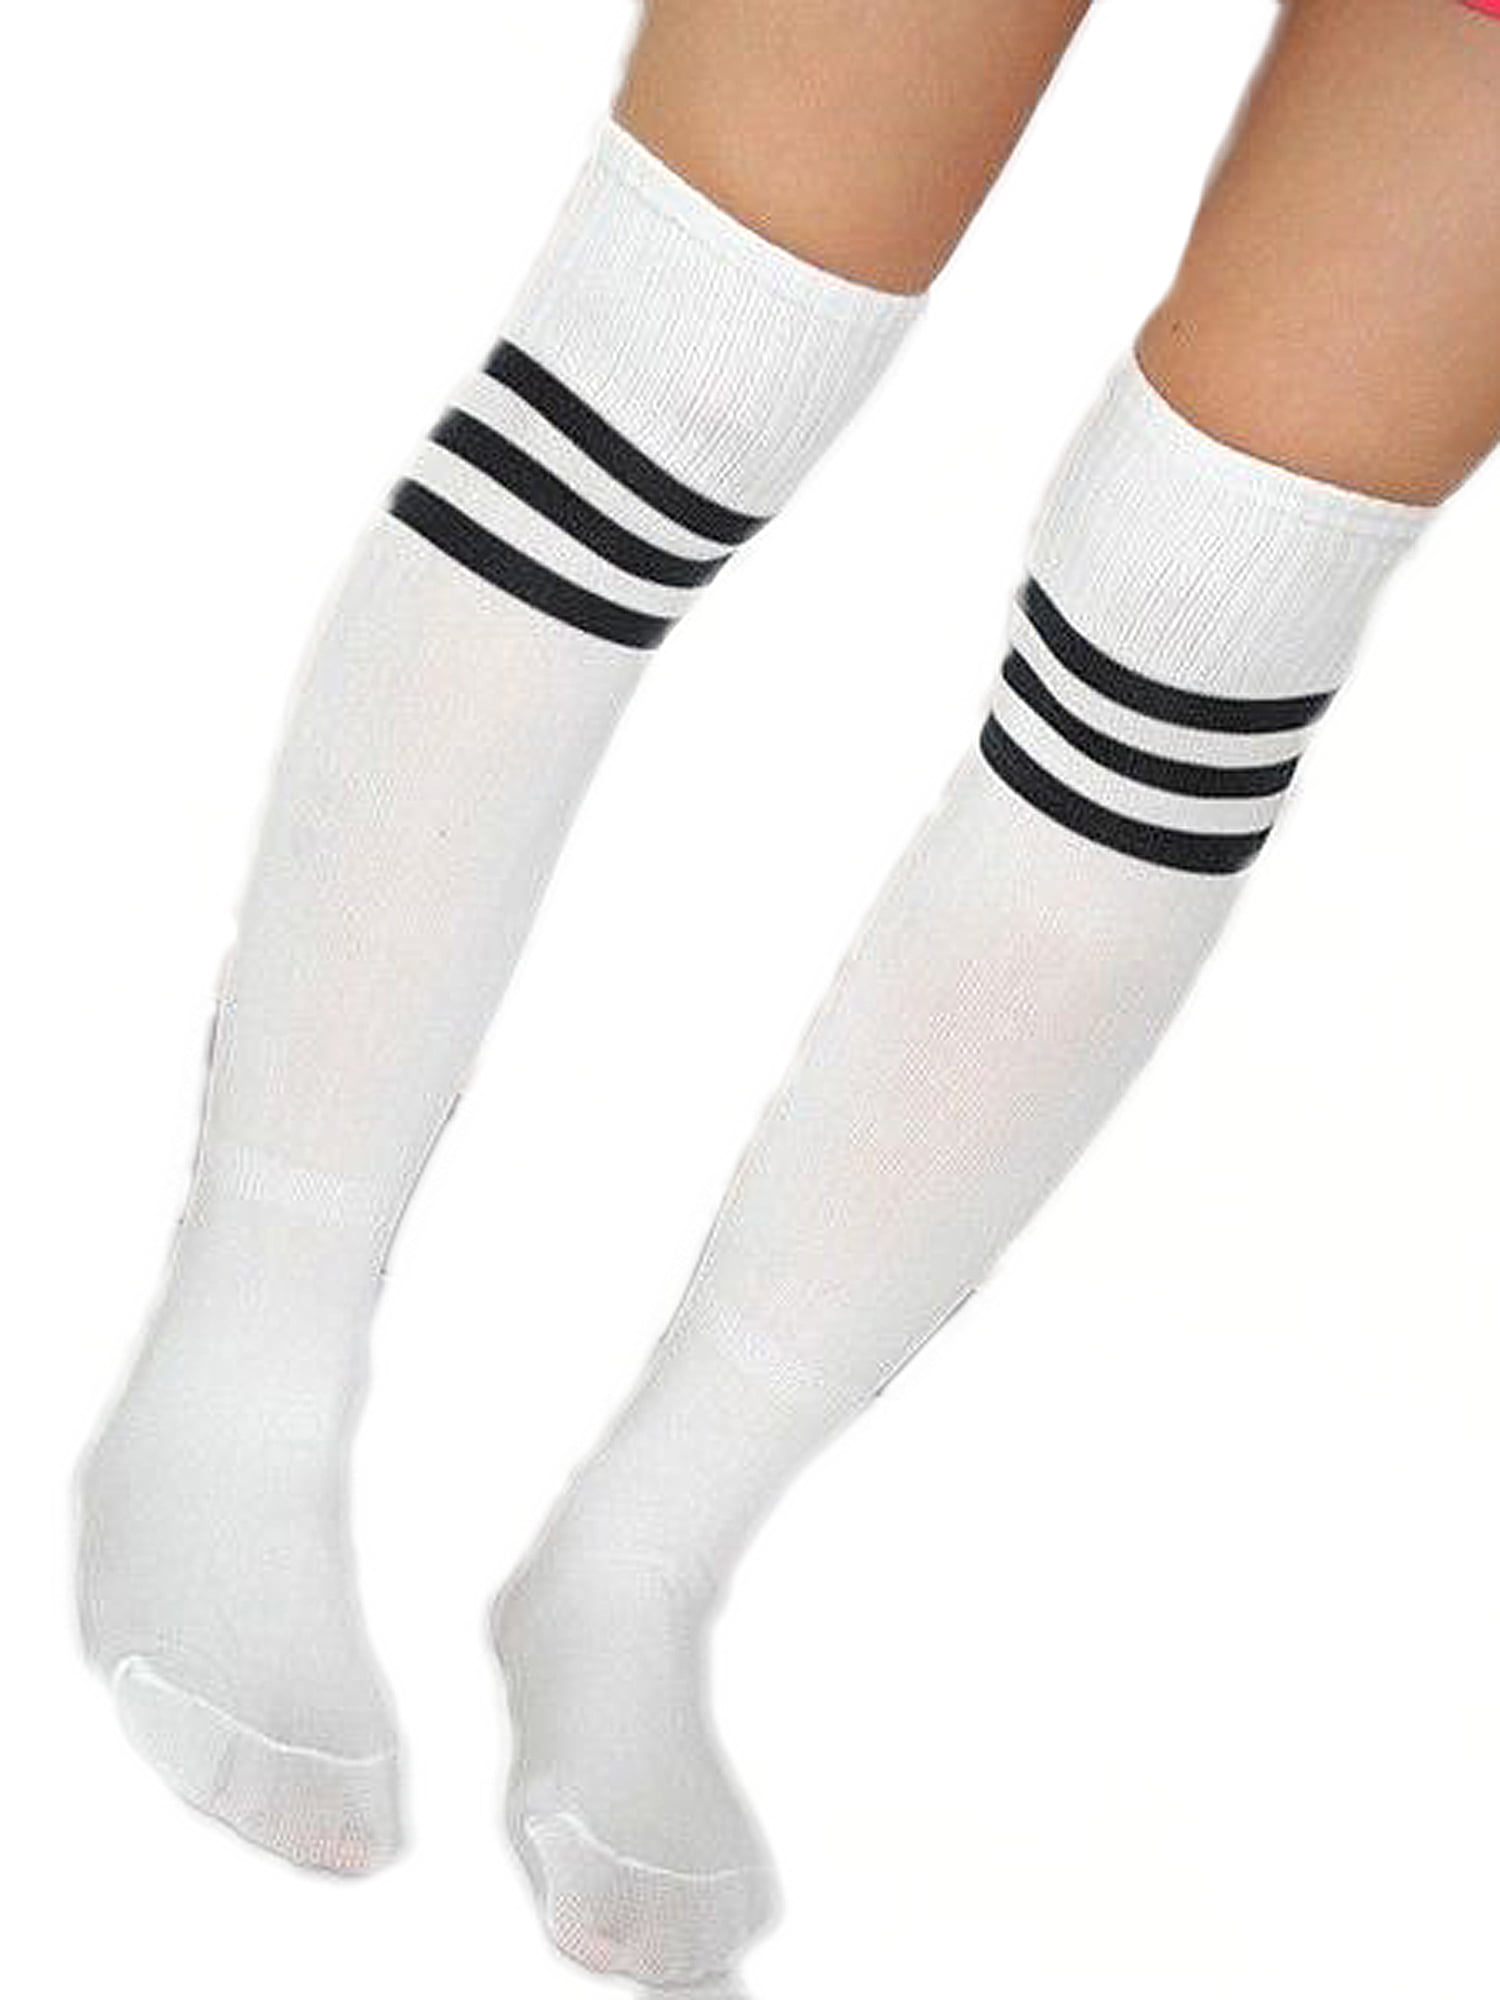 High Elasticity Girl Cotton Knee High Socks Uniform Color Music Women Tube Socks 